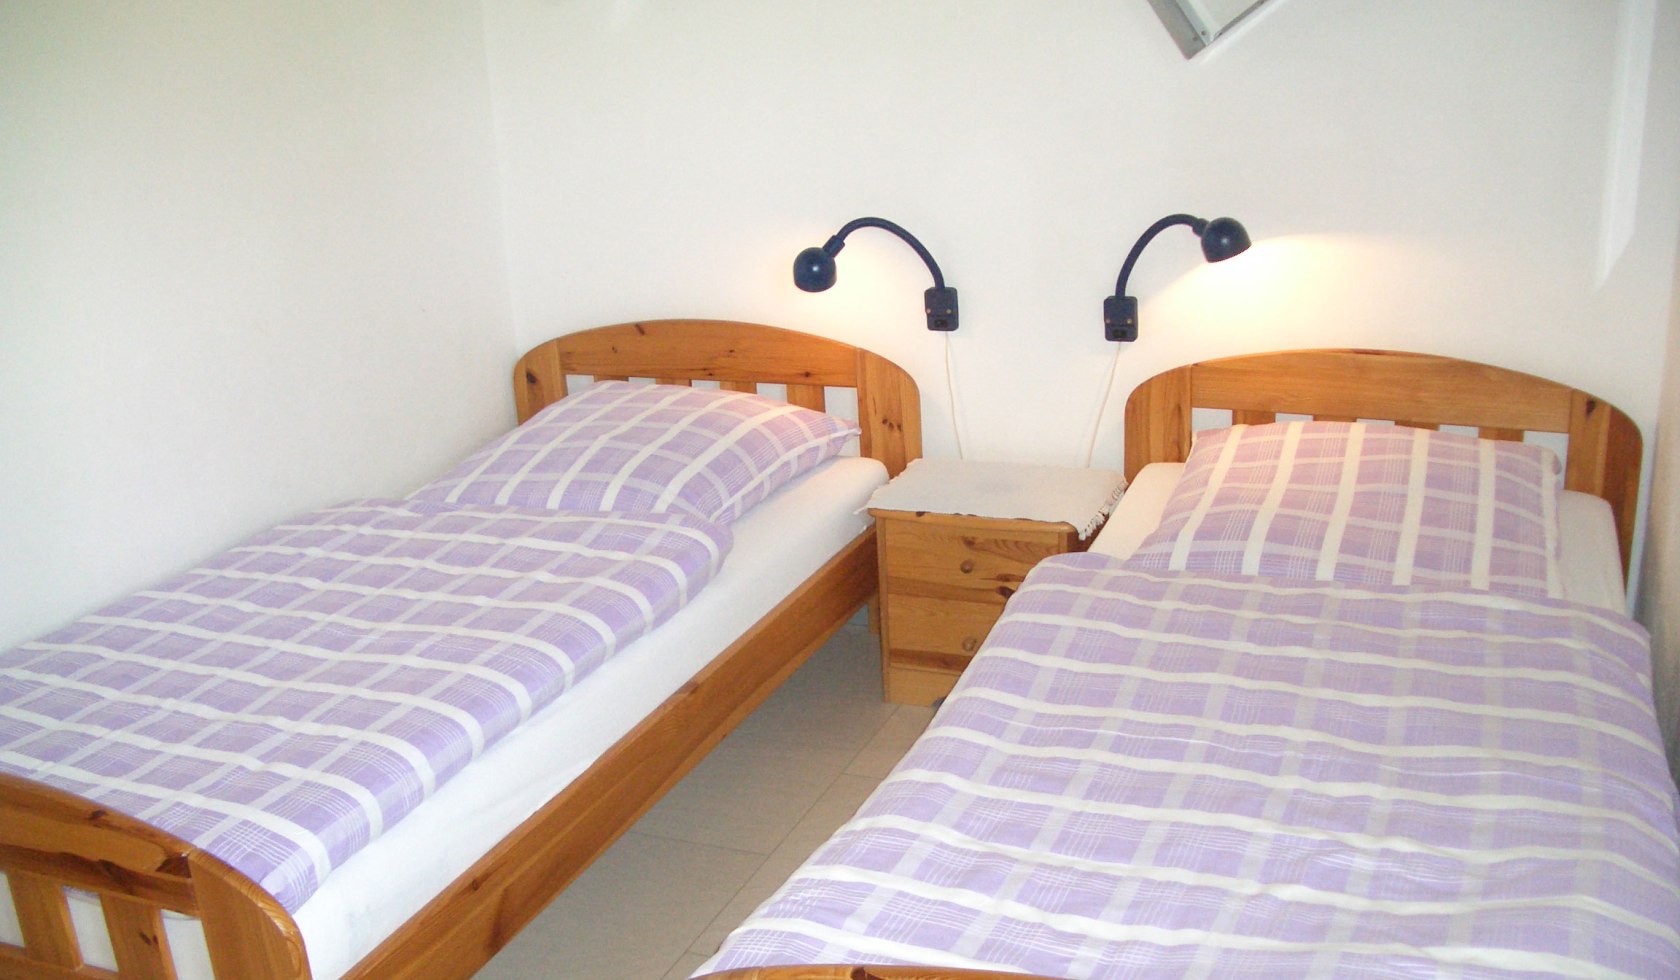 Zweibettzimmer in einer Wohnung der Ferienhaus Uslar GmbH, © Ferienhaus Uslar GmbH